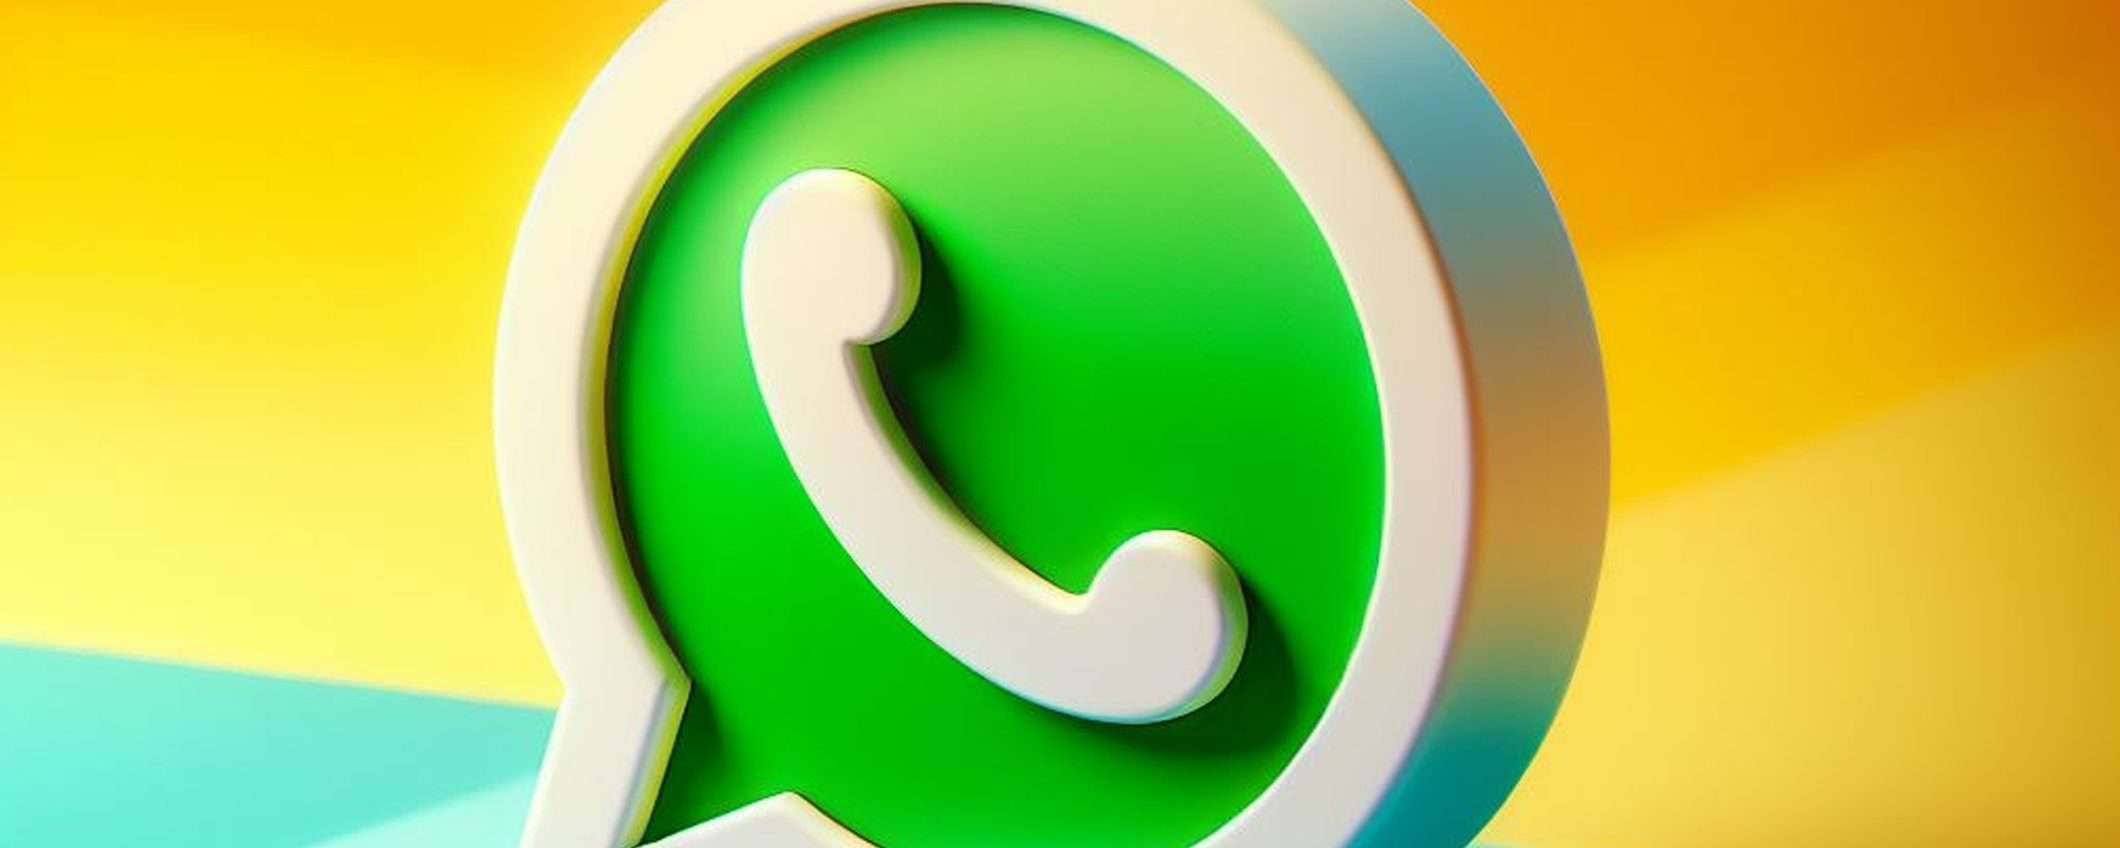 WhatsApp: sorveglianza tramite analisi del traffico